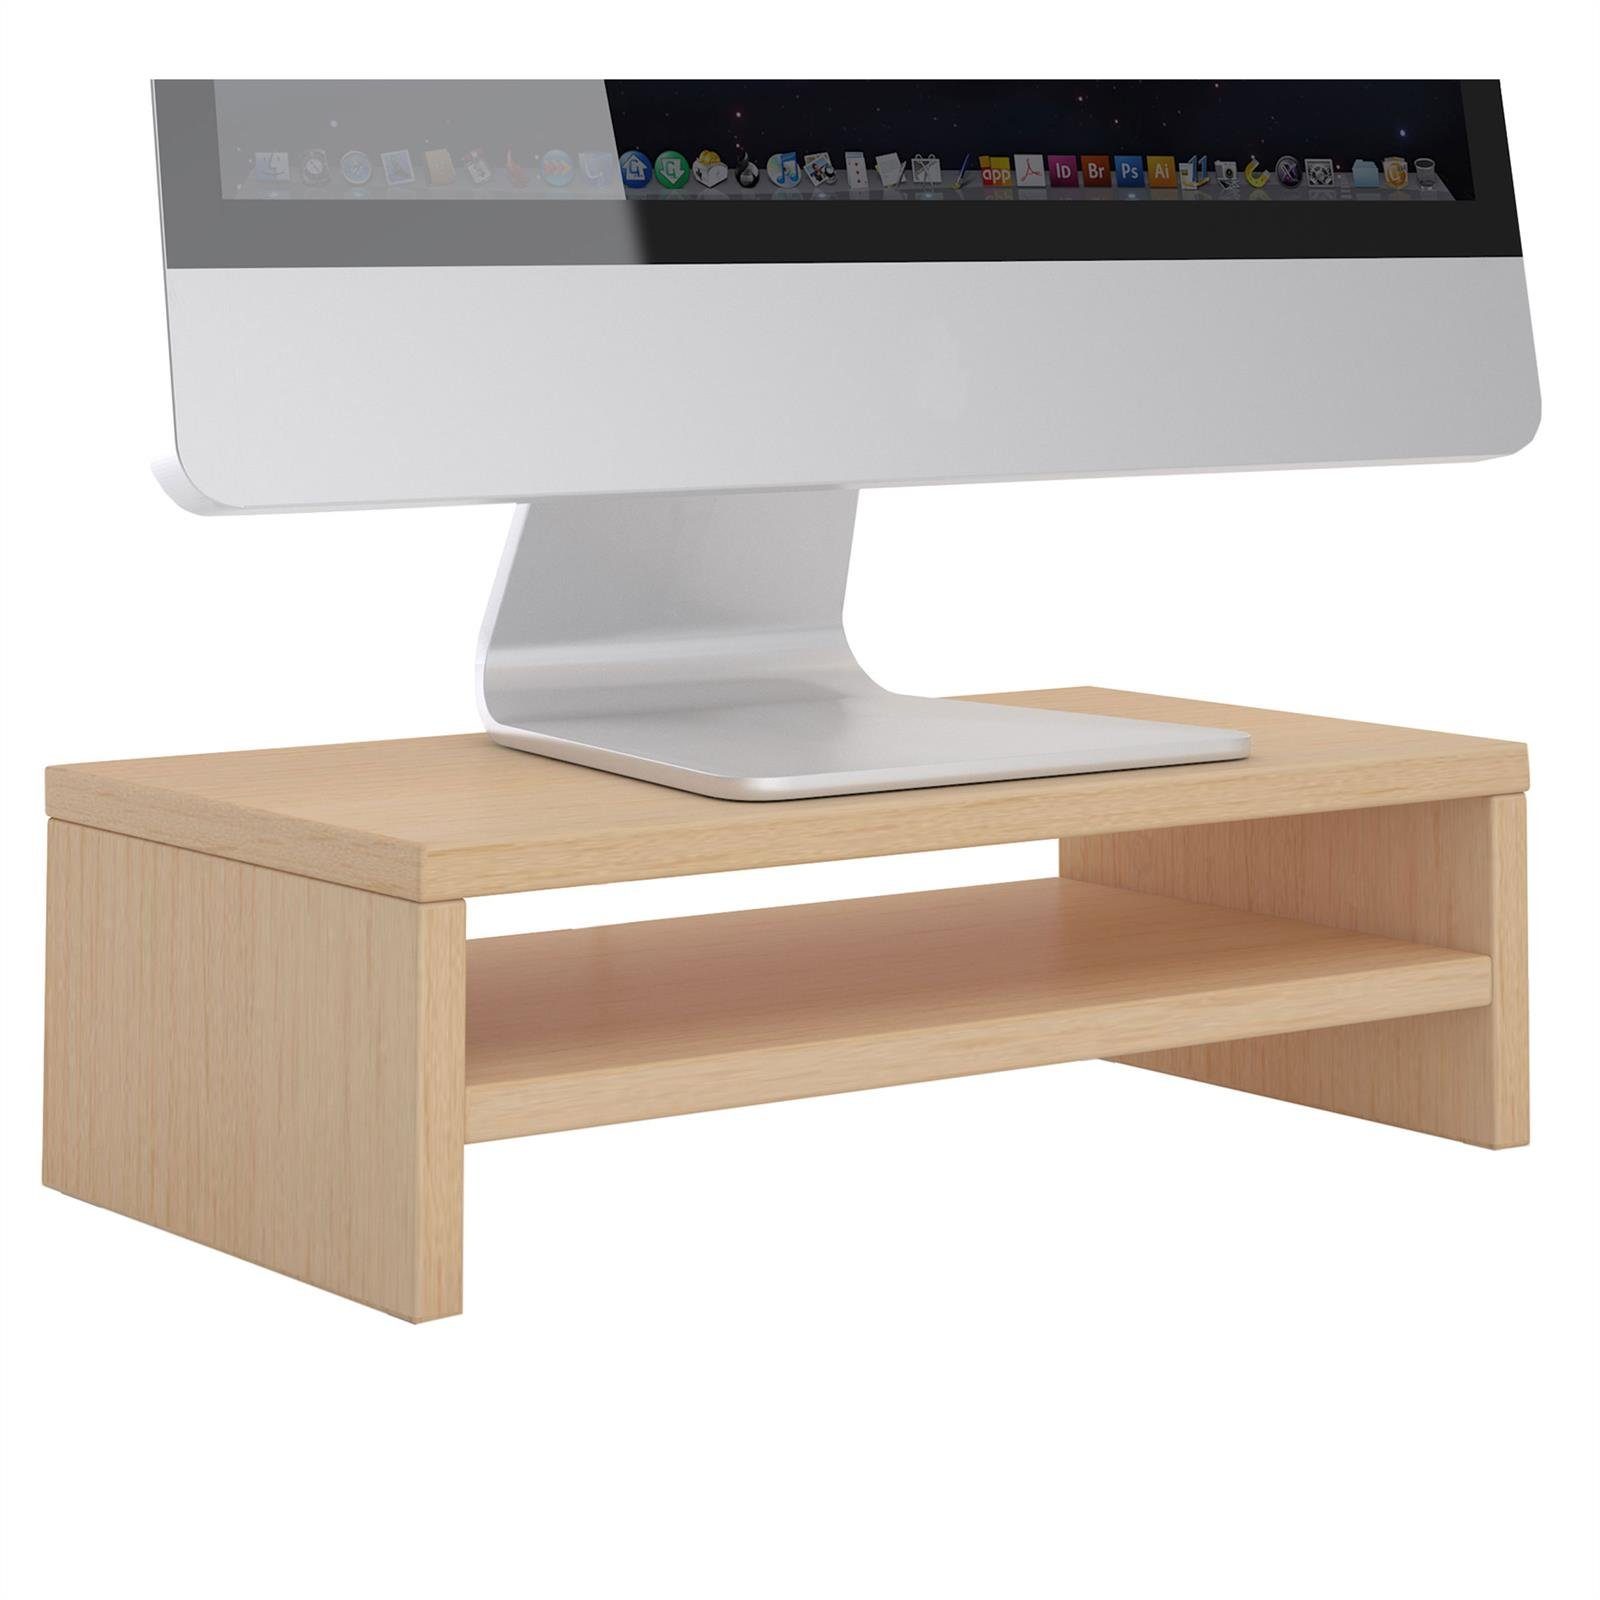 CARO-Möbel Schreibtischaufsatz SUBIDA, Bildschirmaufsatz Monitorständer Monitorerhöhung inkl. Ablagefach buchefarben